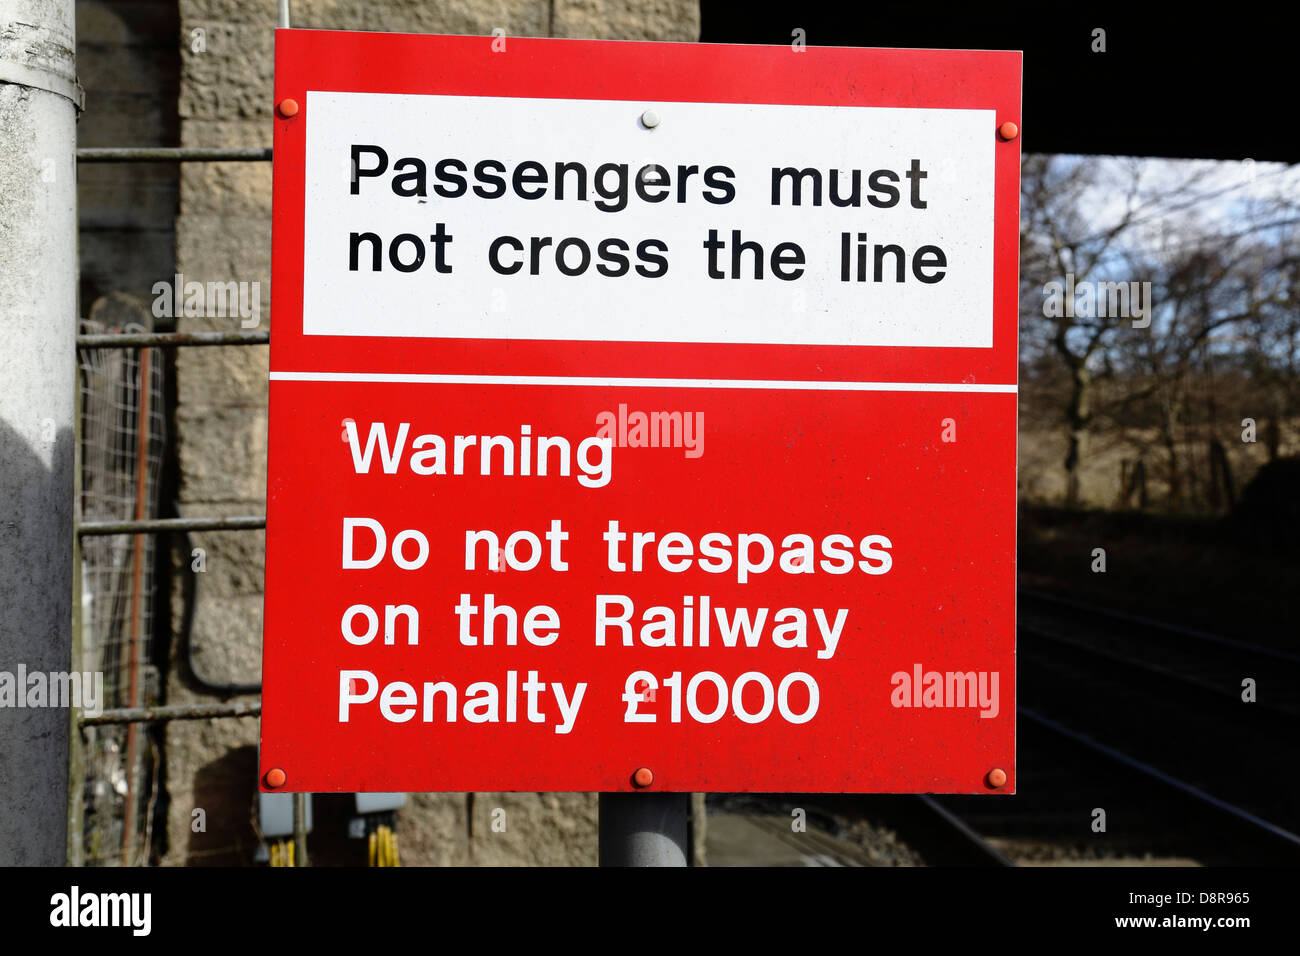 Panneau d'avertissement les passagers ne doivent pas traverser la file d'attente et Avertissement ne pas intrusion sur la pénalité de chemin de fer £1000, Ecosse, Royaume-Uni Banque D'Images